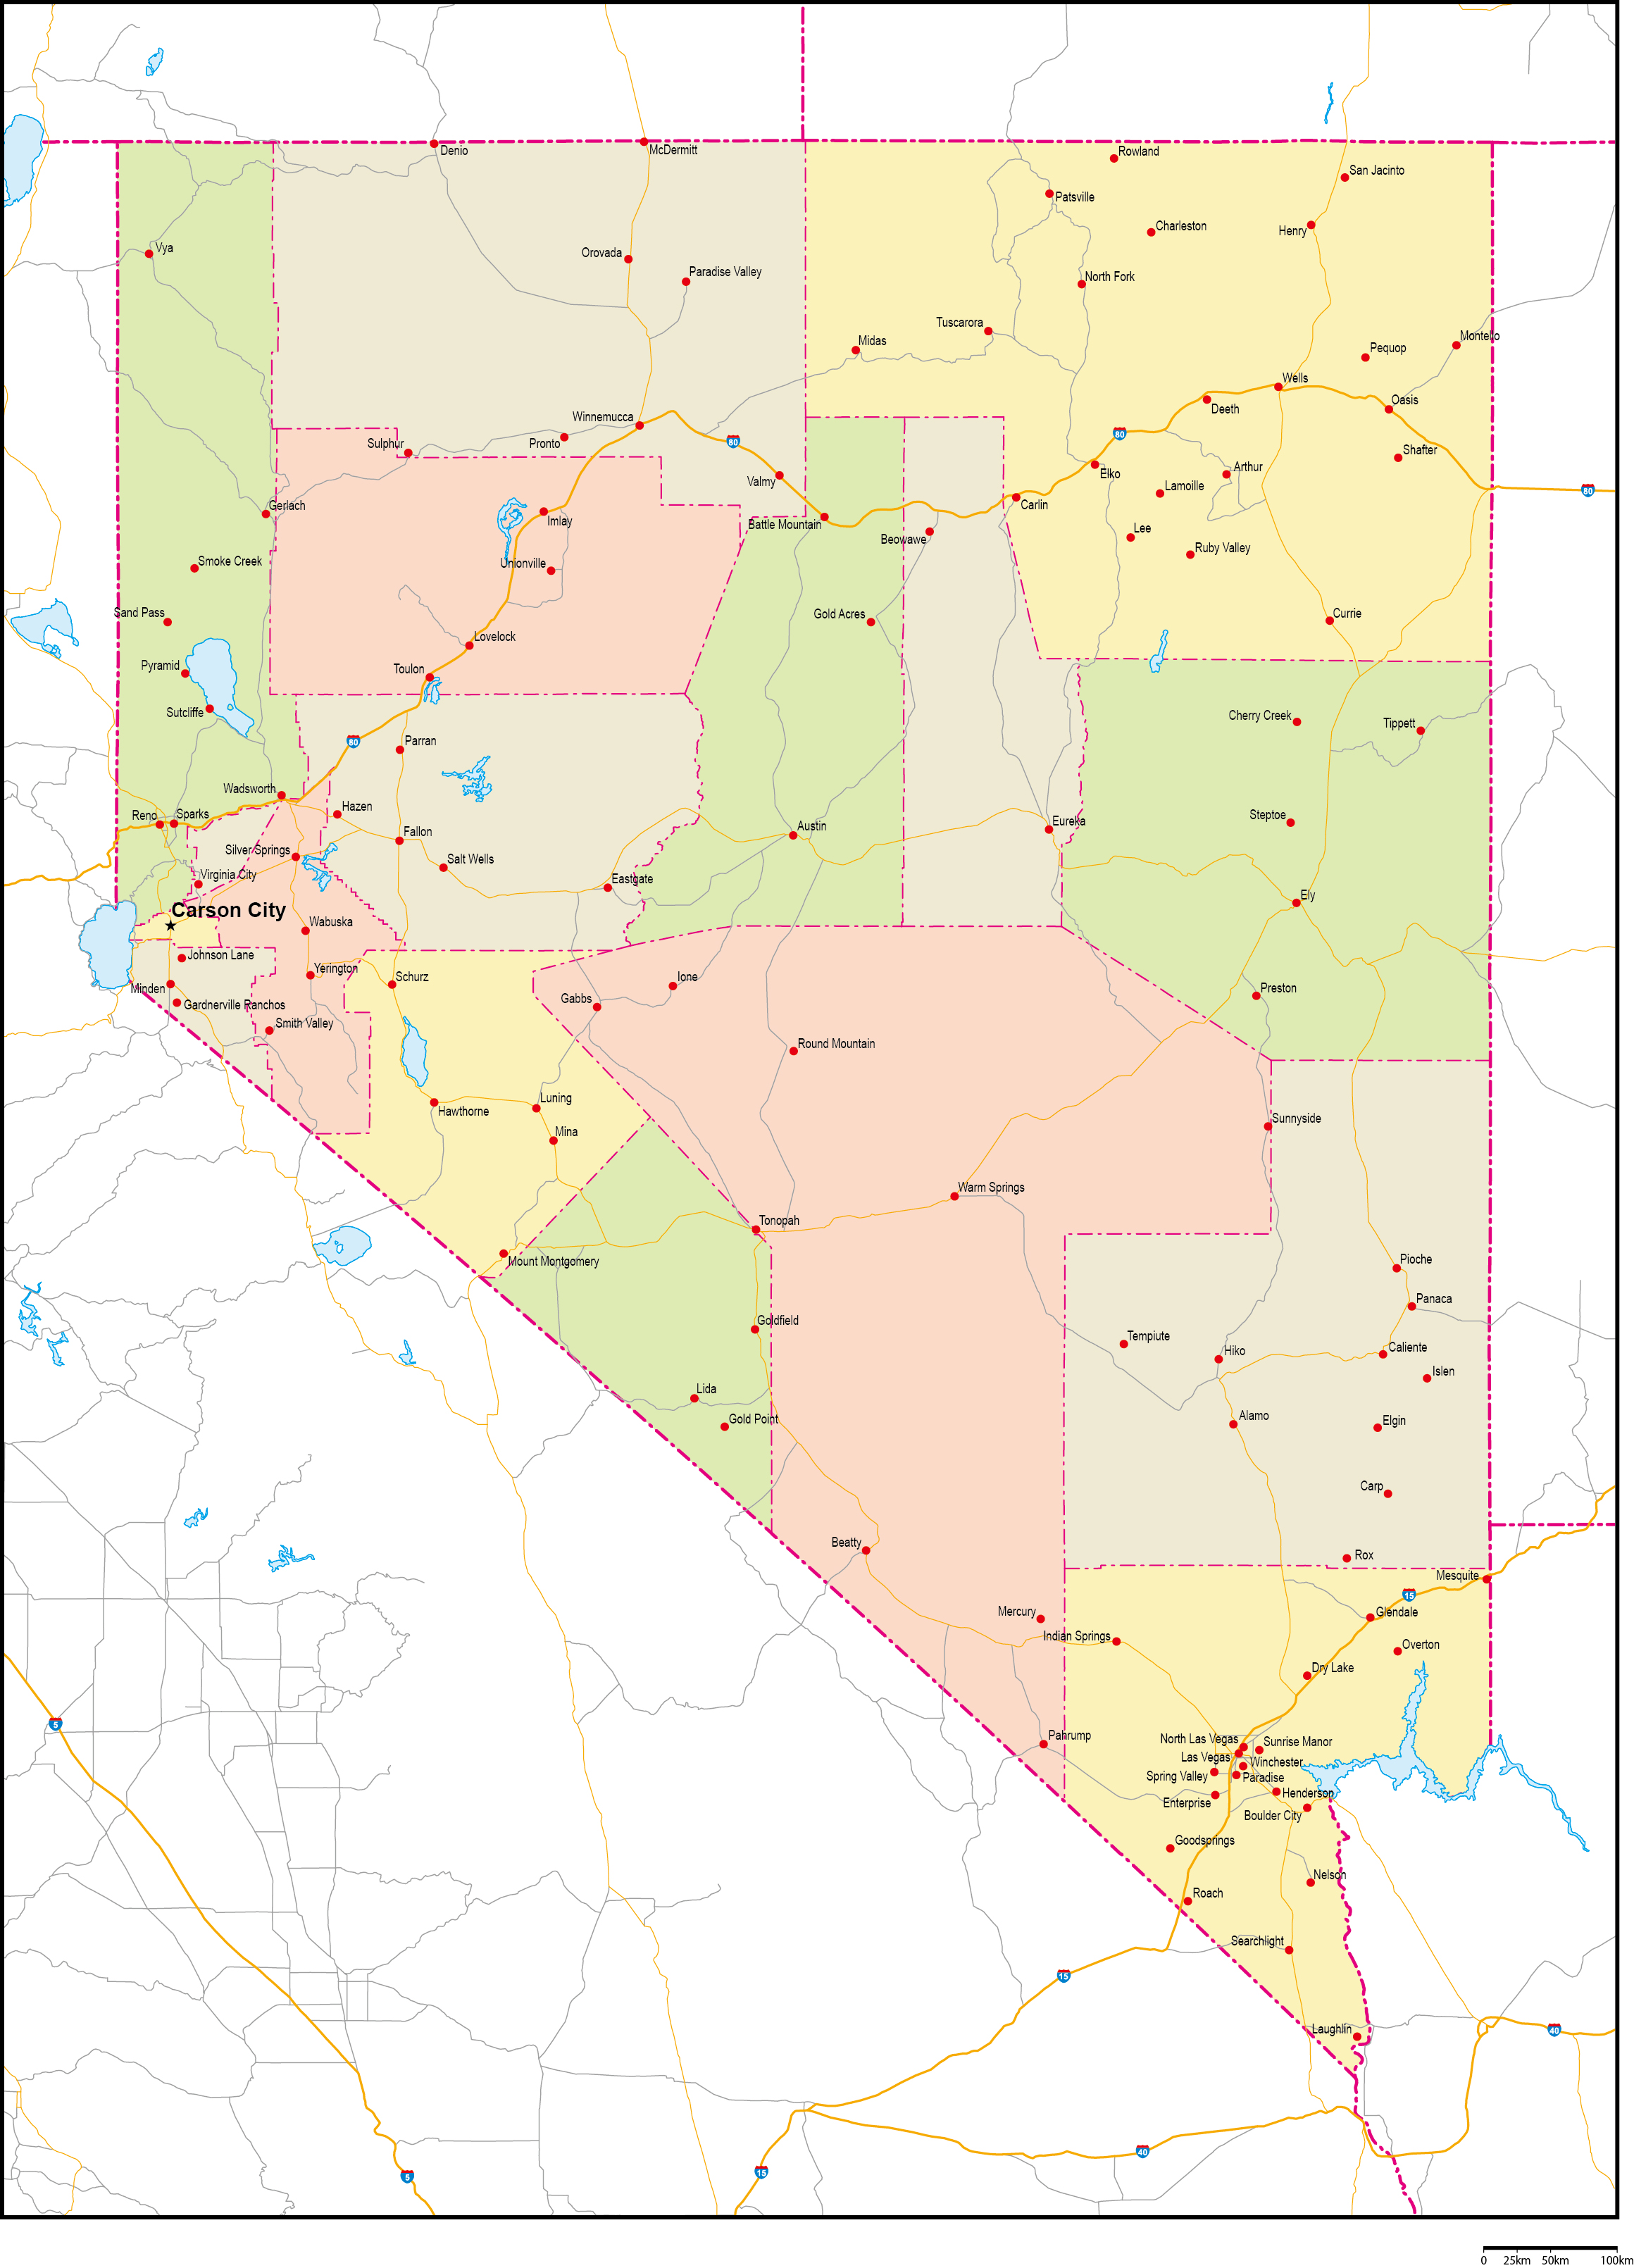 ネバダ州郡色分け地図州都・主な都市・道路あり(英語)フリーデータの画像